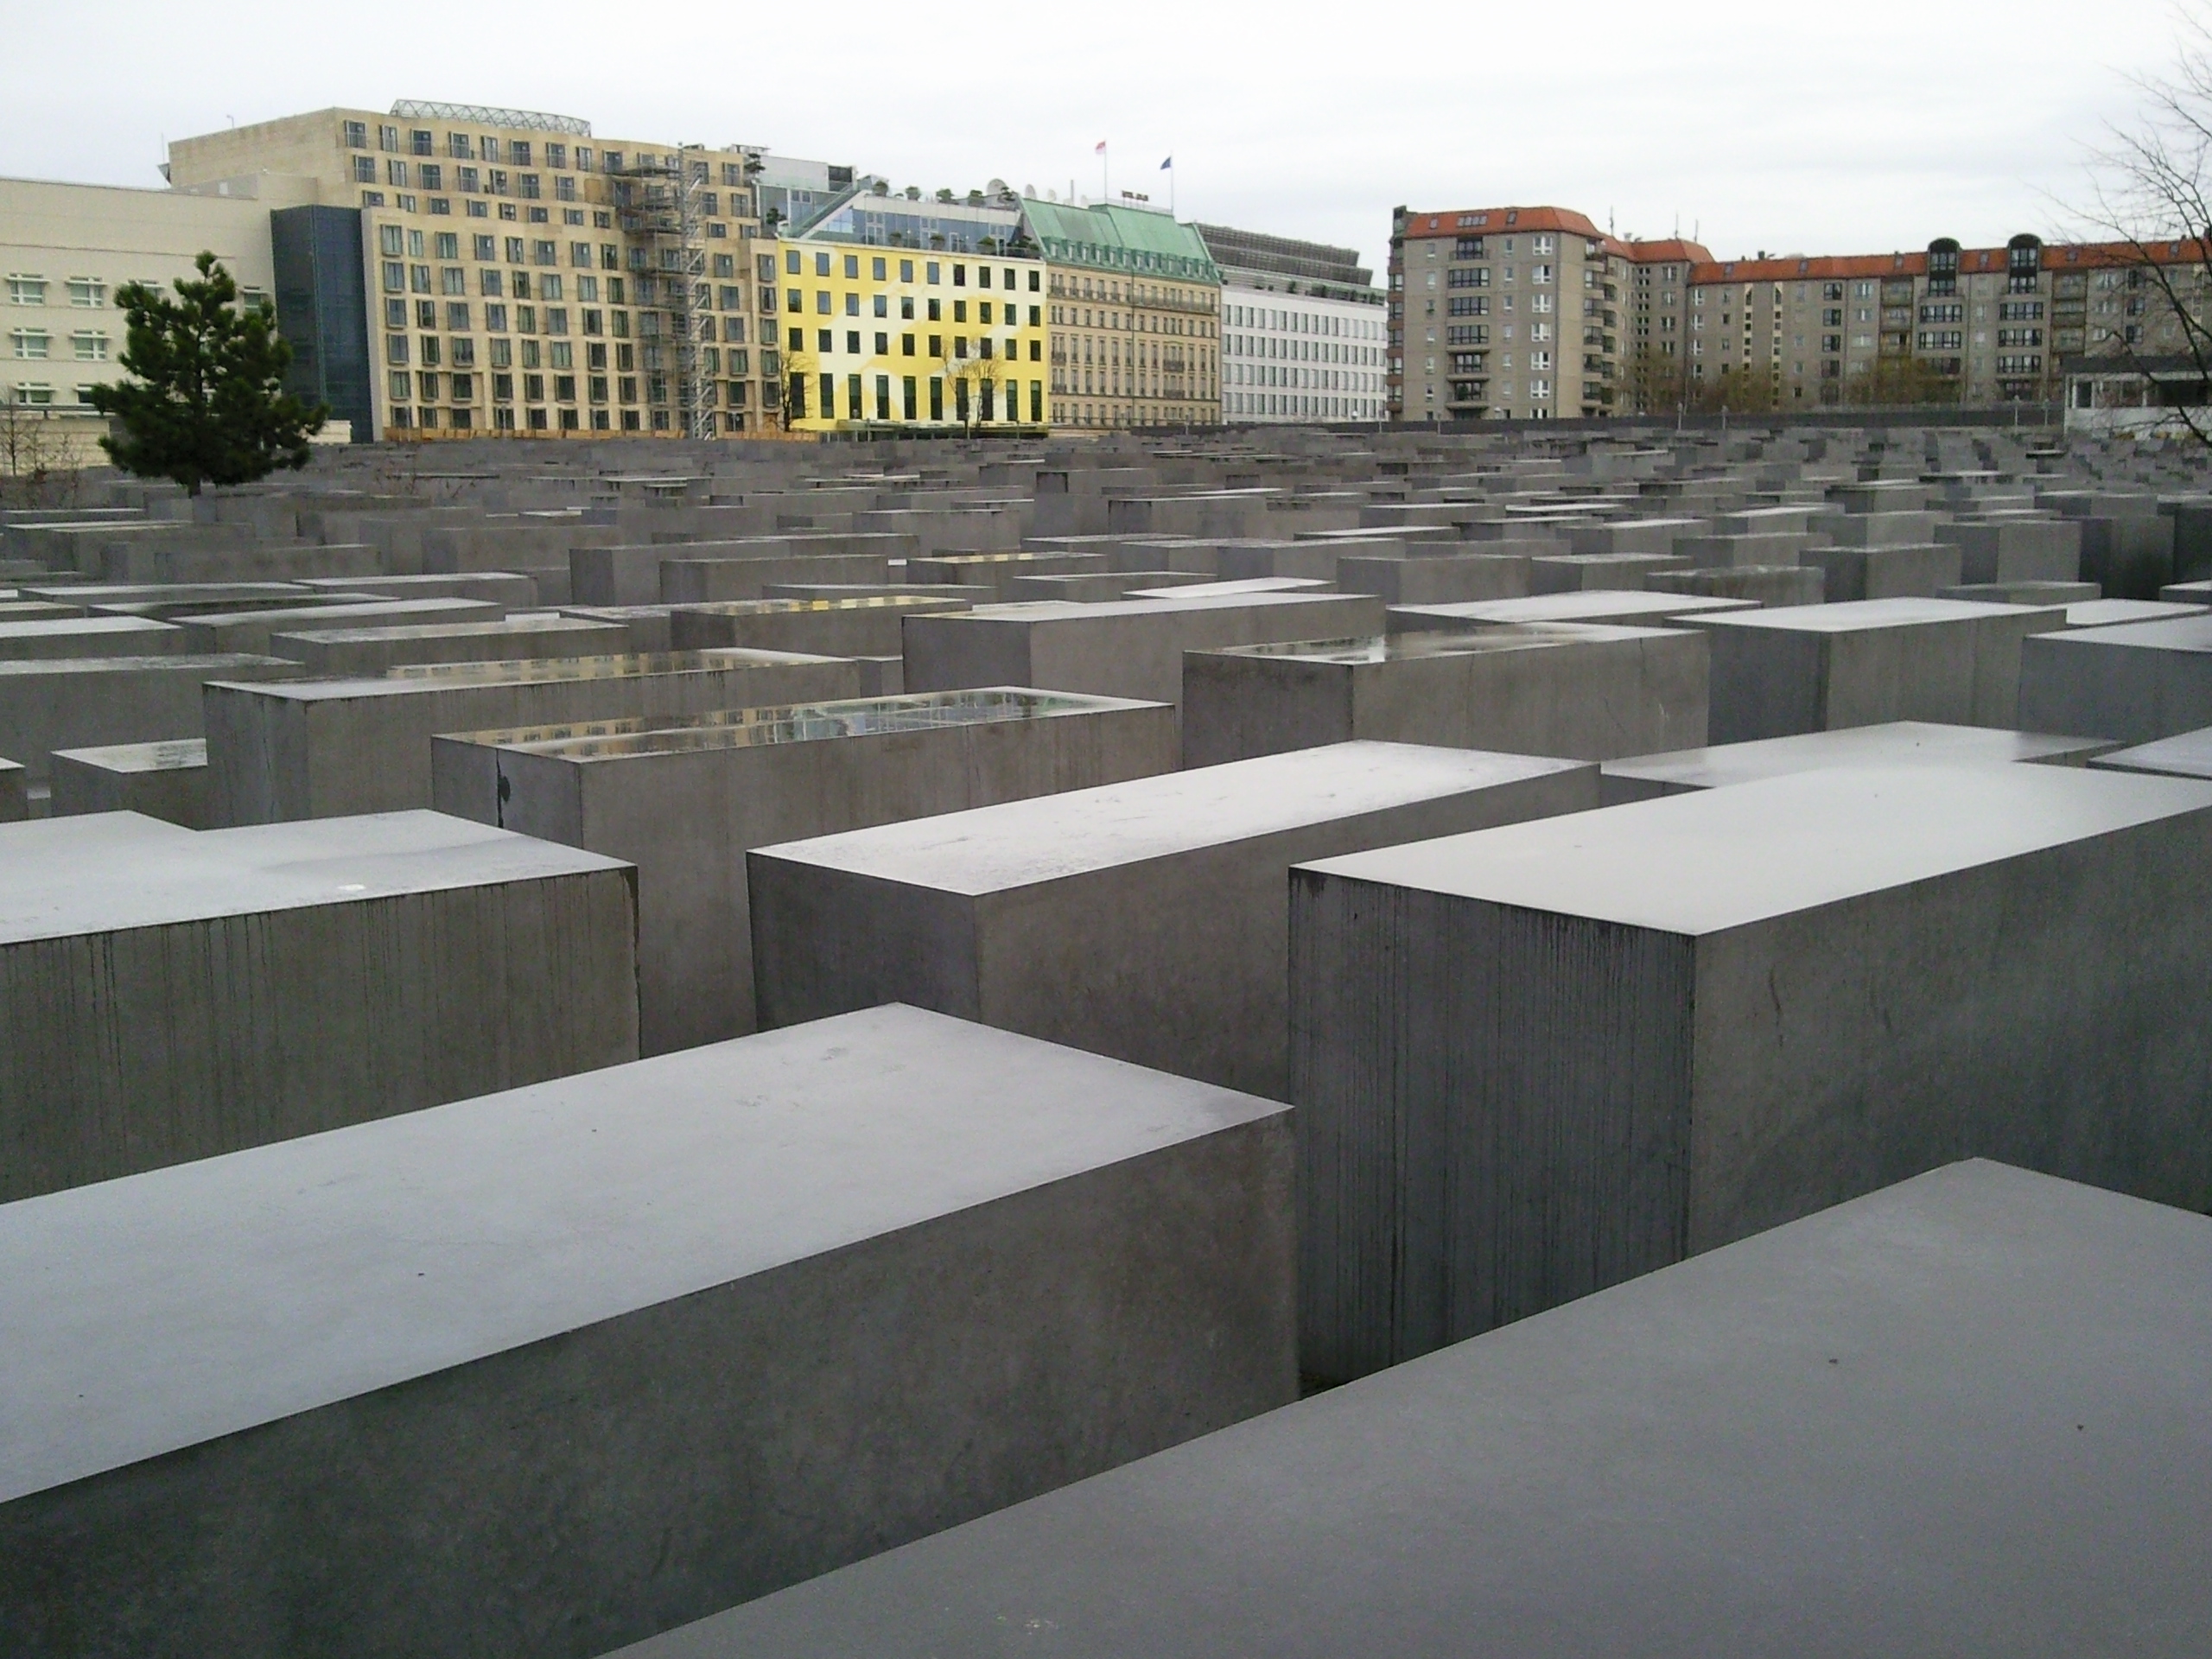 камни, прямоугольники, Холокост памятник Берлин - обои на рабочий стол